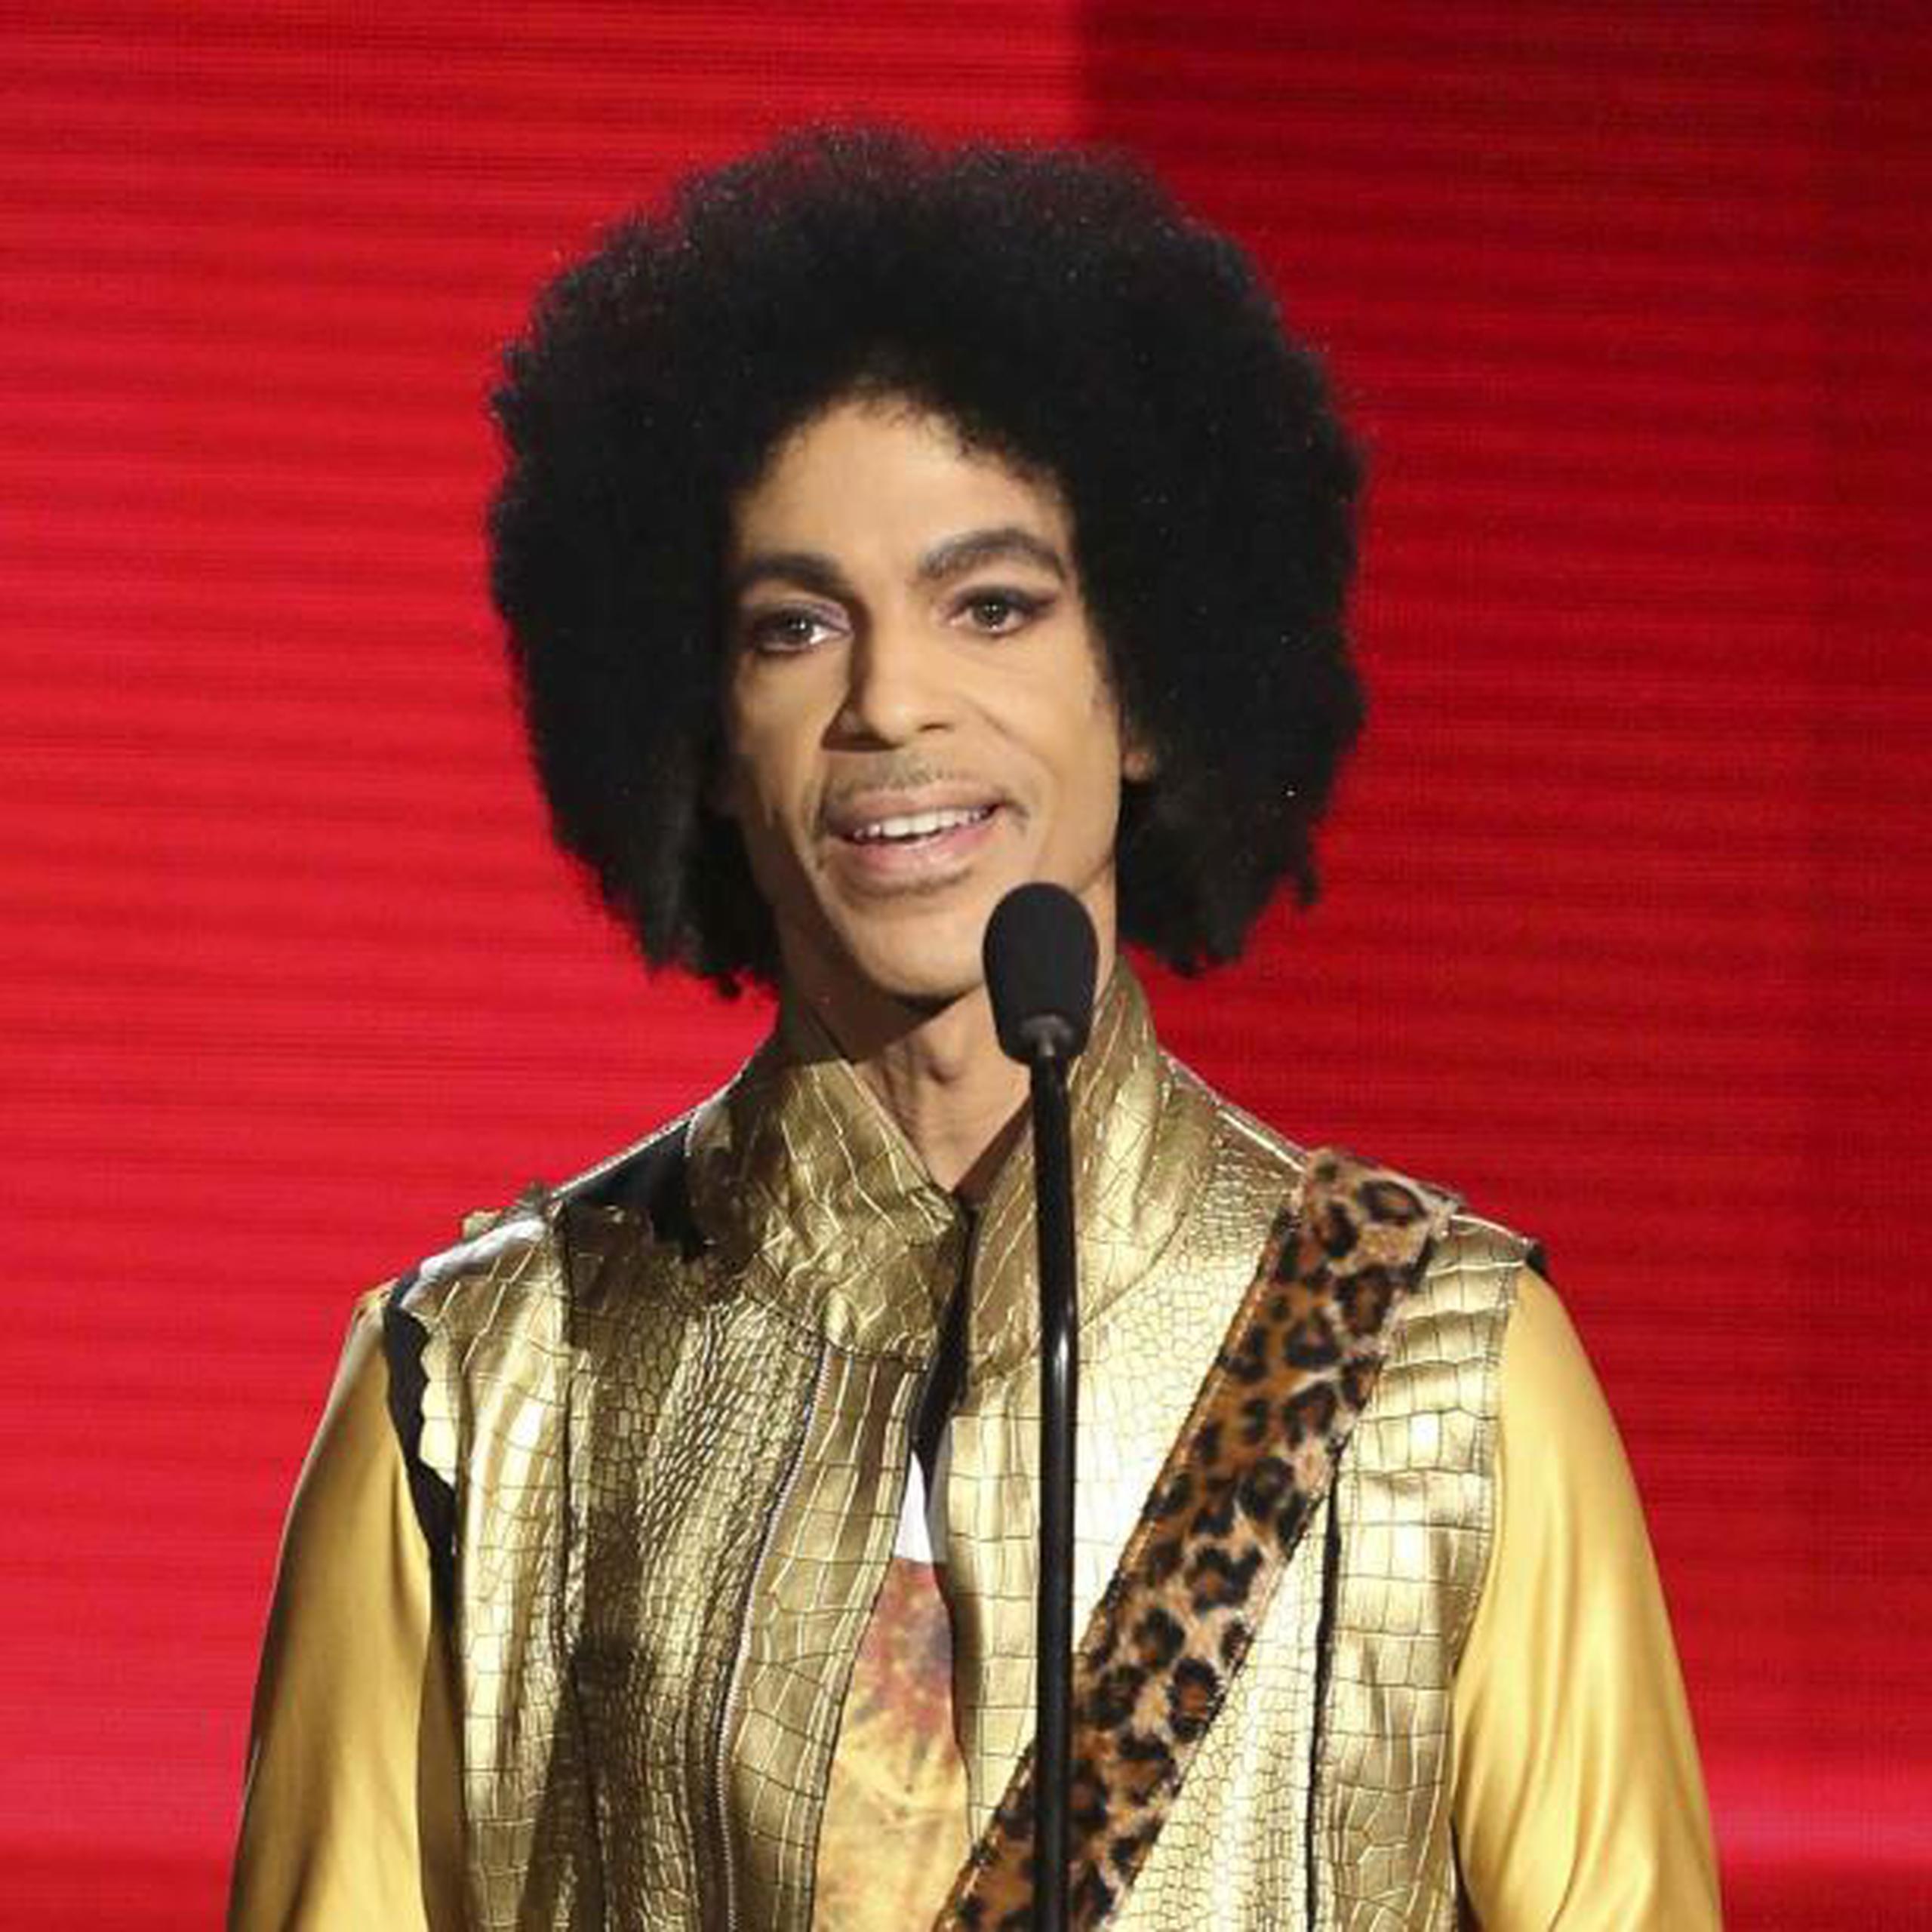 Prince falleció hace tres años, el 21 de abril, de una sobredosis accidental de fentanilo. (Matt Sayles / Invision / AP, Archivo)